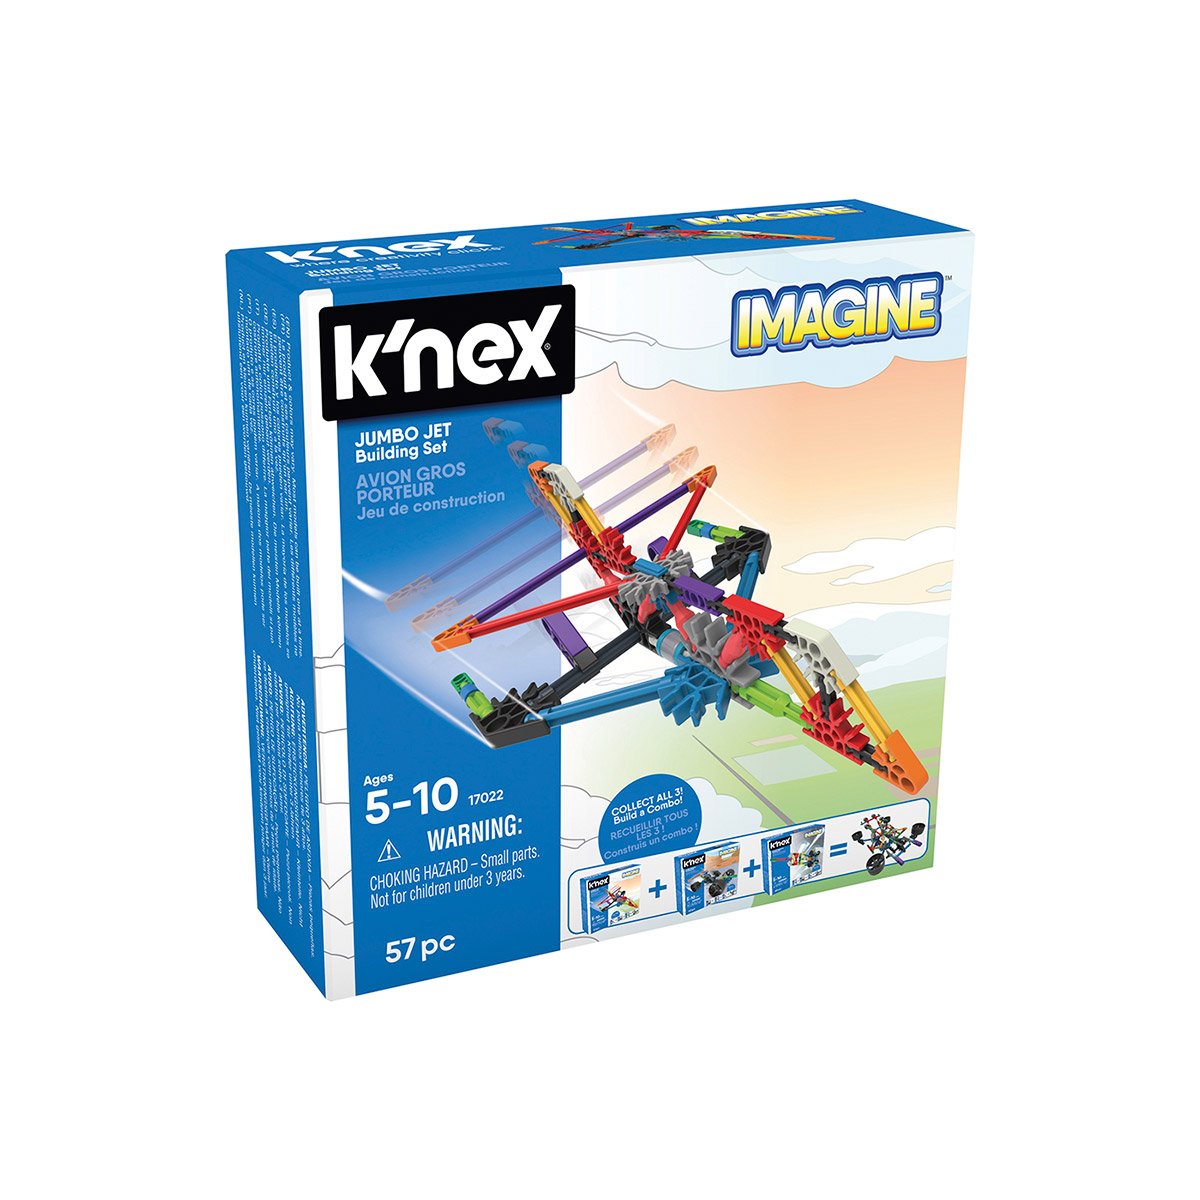 60 Pièces-Âges 5-10 jouet, K 'NEX 17021 Imaginez Set navette spatiale Construction 